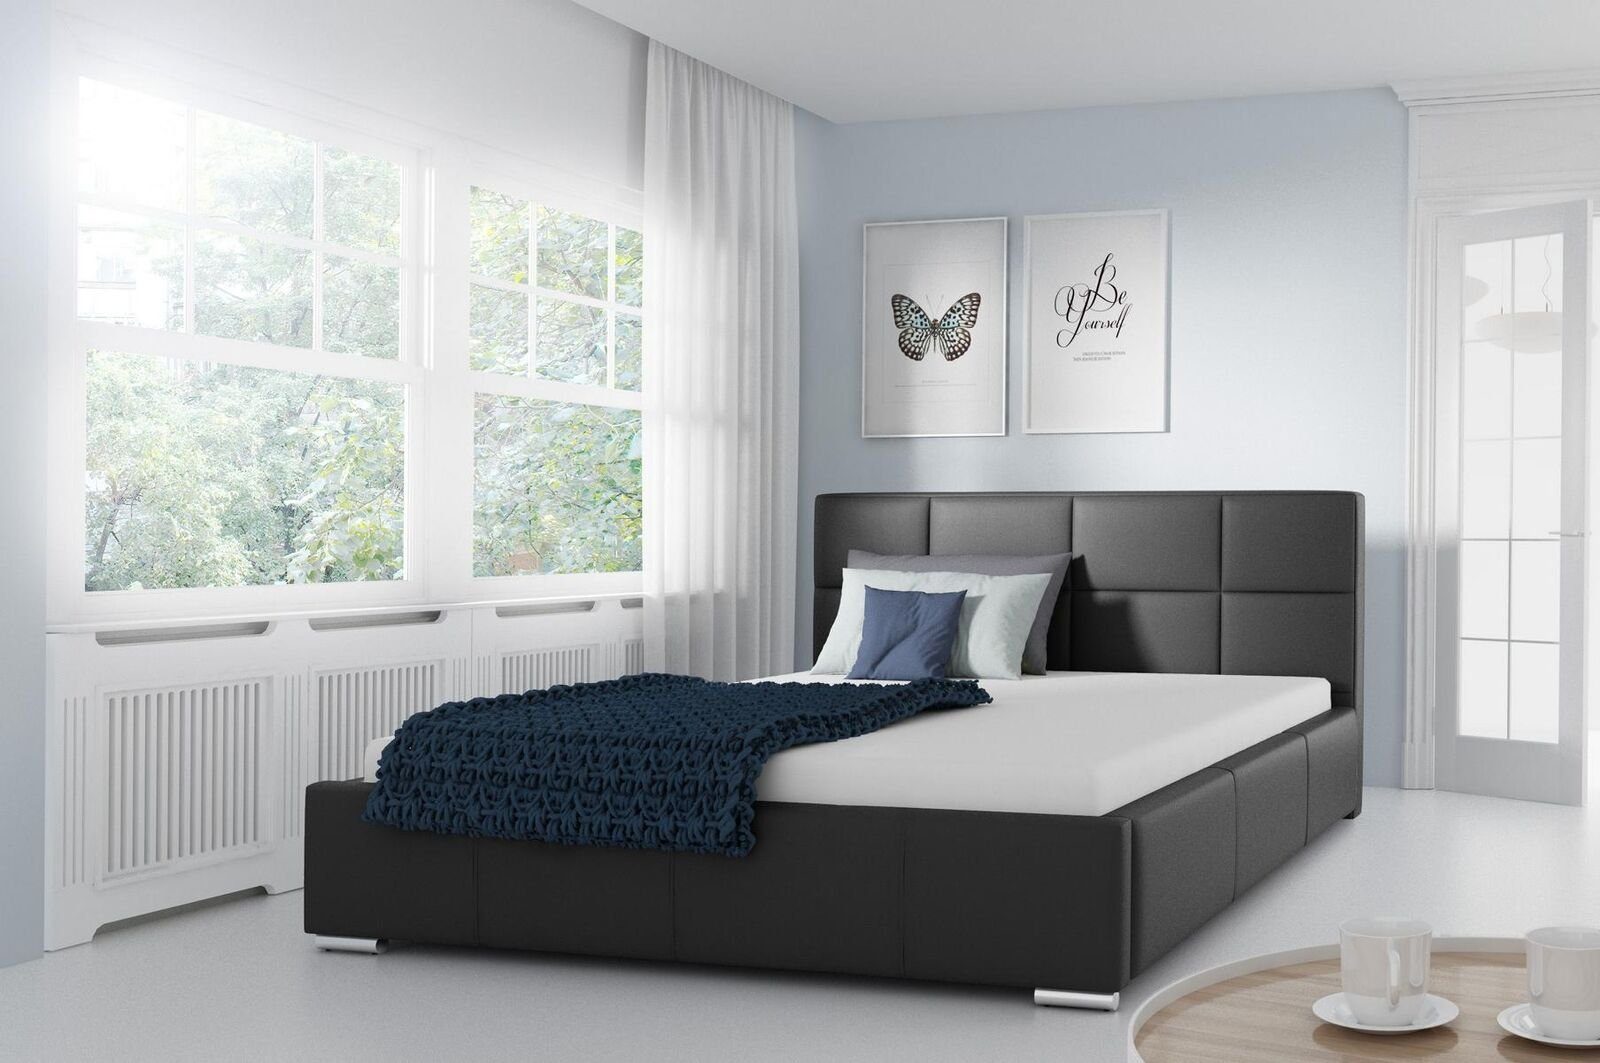 JVmoebel Lederbett, Doppel Bett Gepolsterte Design Luxus Möbel 200x200 Bettrahmen